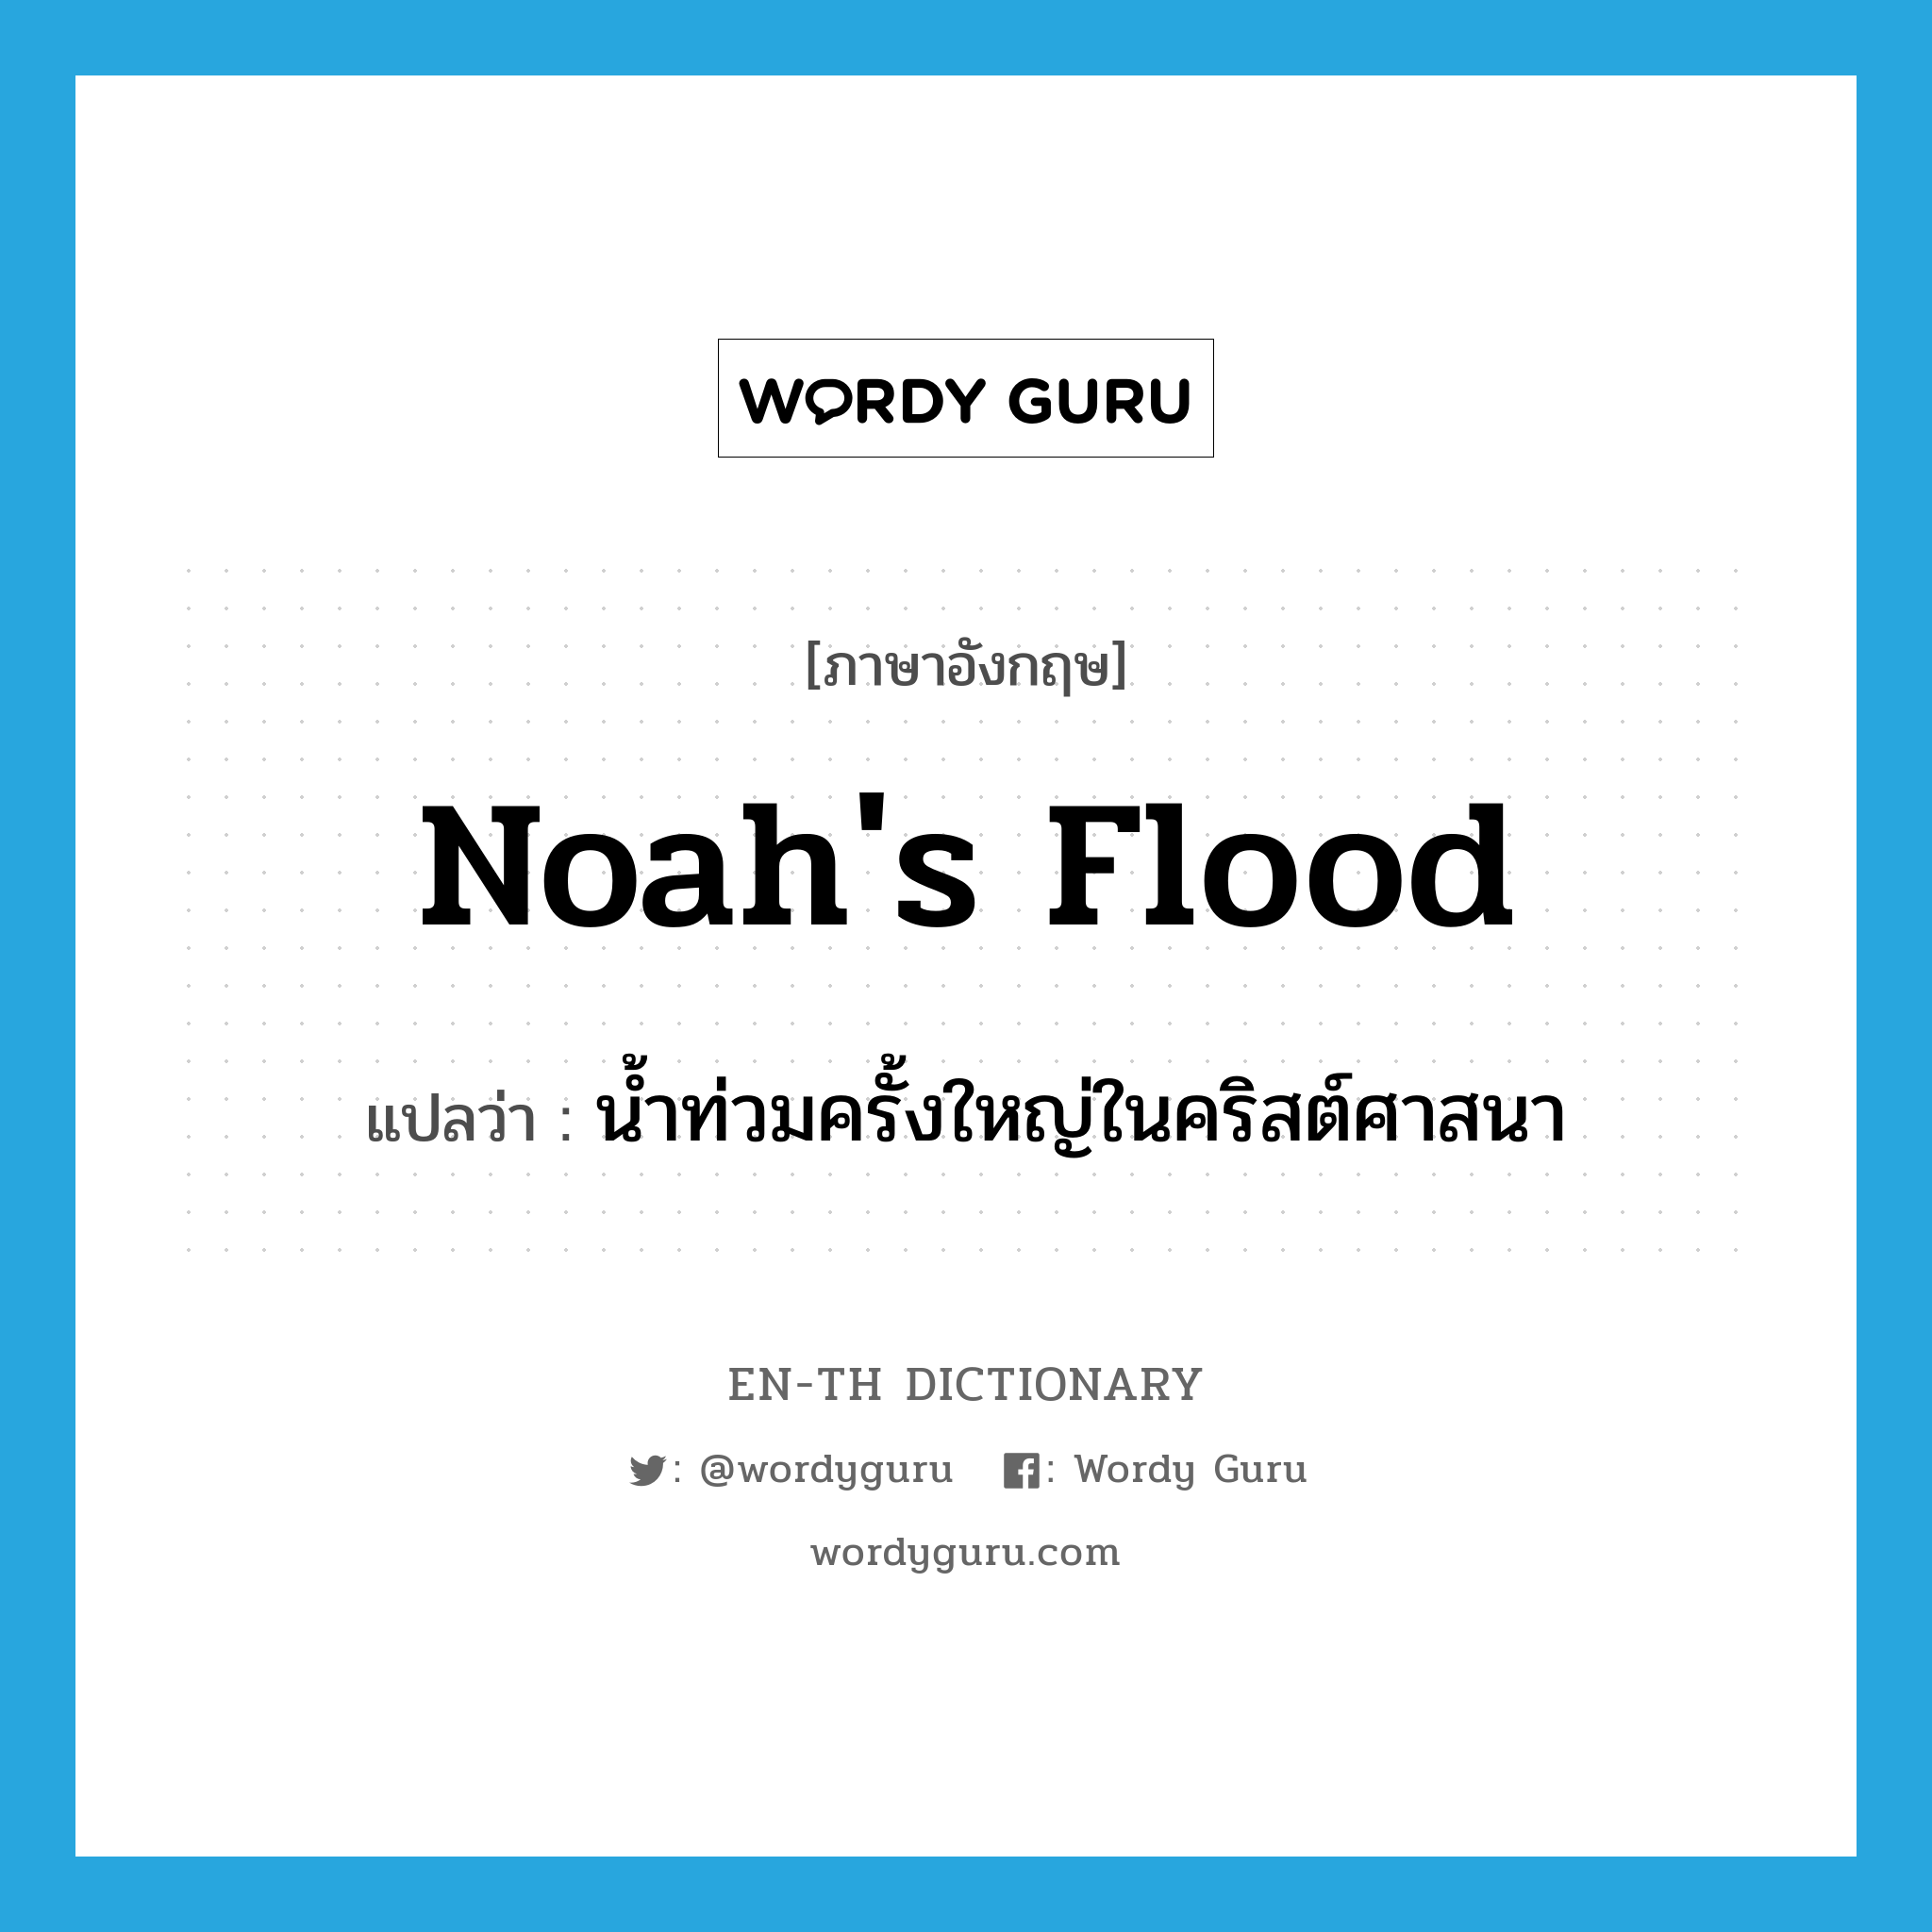 น้ำท่วมครั้งใหญ่ในคริสต์ศาสนา ภาษาอังกฤษ?, คำศัพท์ภาษาอังกฤษ น้ำท่วมครั้งใหญ่ในคริสต์ศาสนา แปลว่า Noah's Flood ประเภท N หมวด N